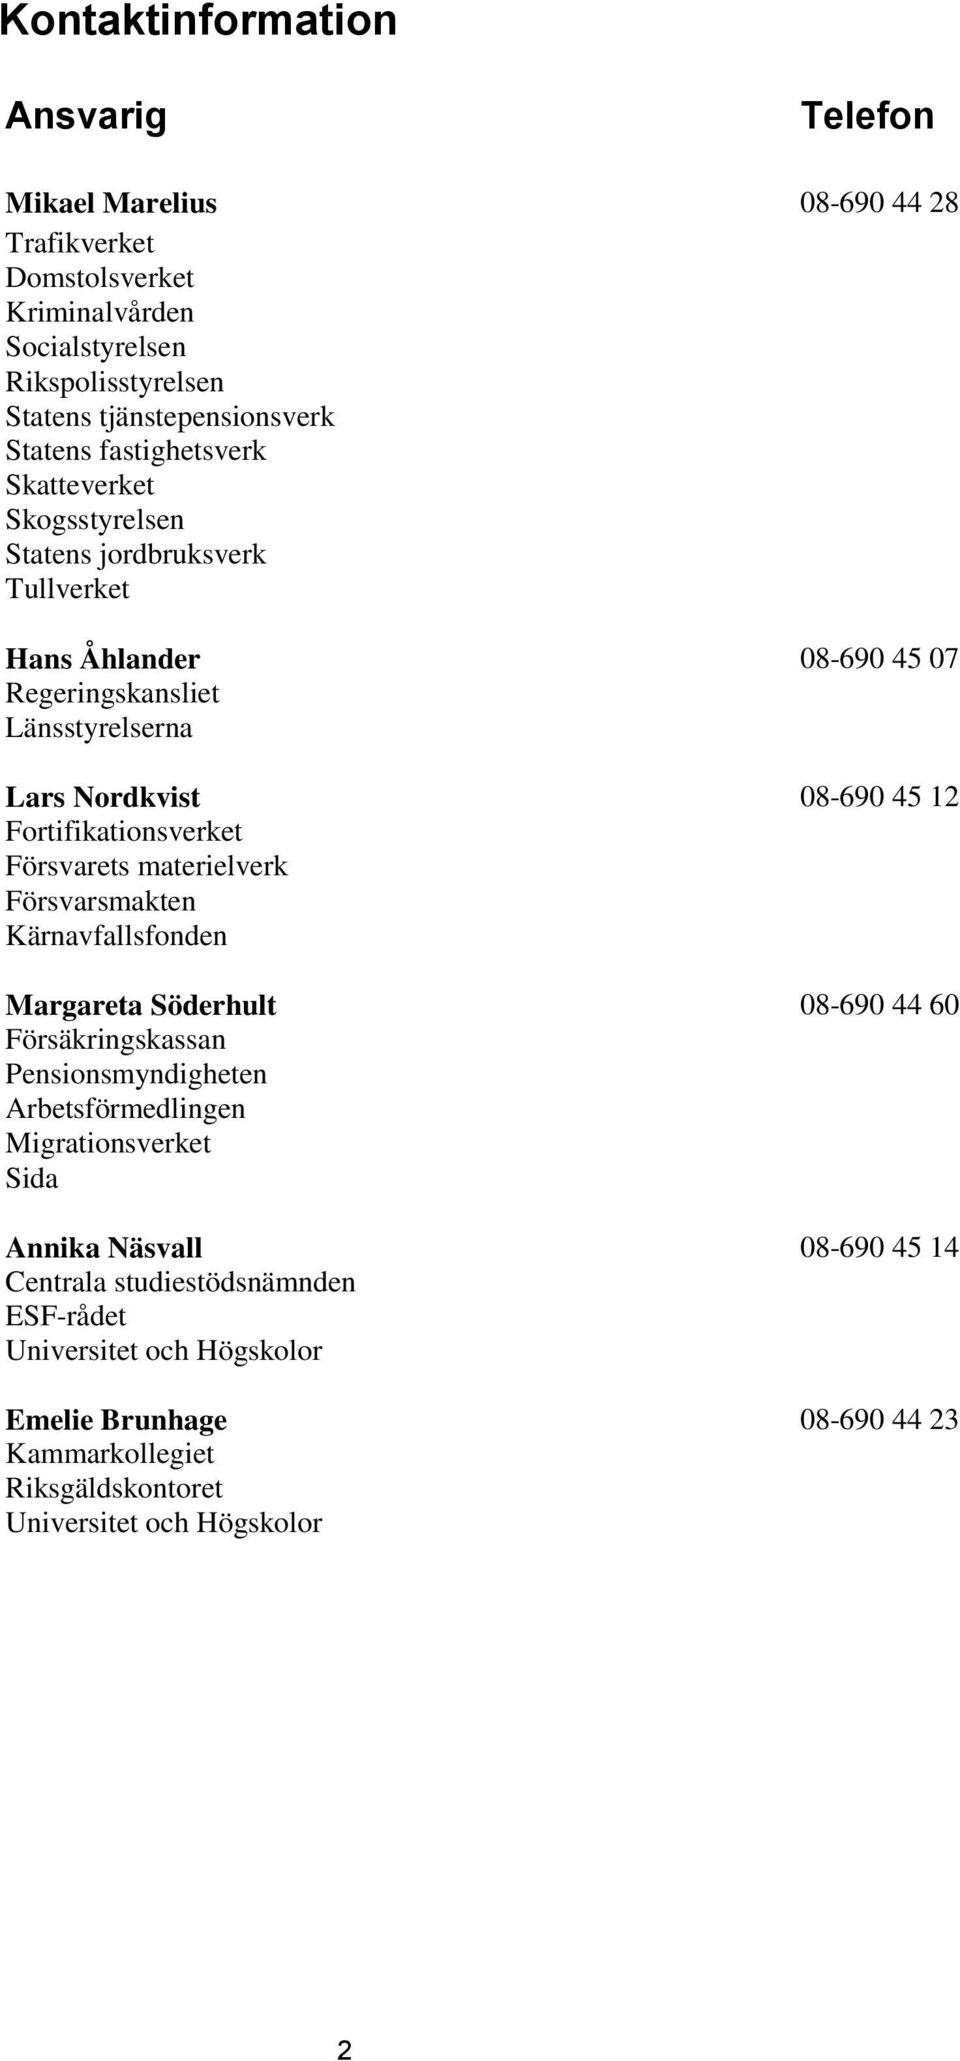 Fortifikationsverket Försvarets materielverk Försvarsmakten Kärnavfallsfonden Margareta Söderhult 08-690 44 60 Försäkringskassan Pensionsmyndigheten Arbetsförmedlingen